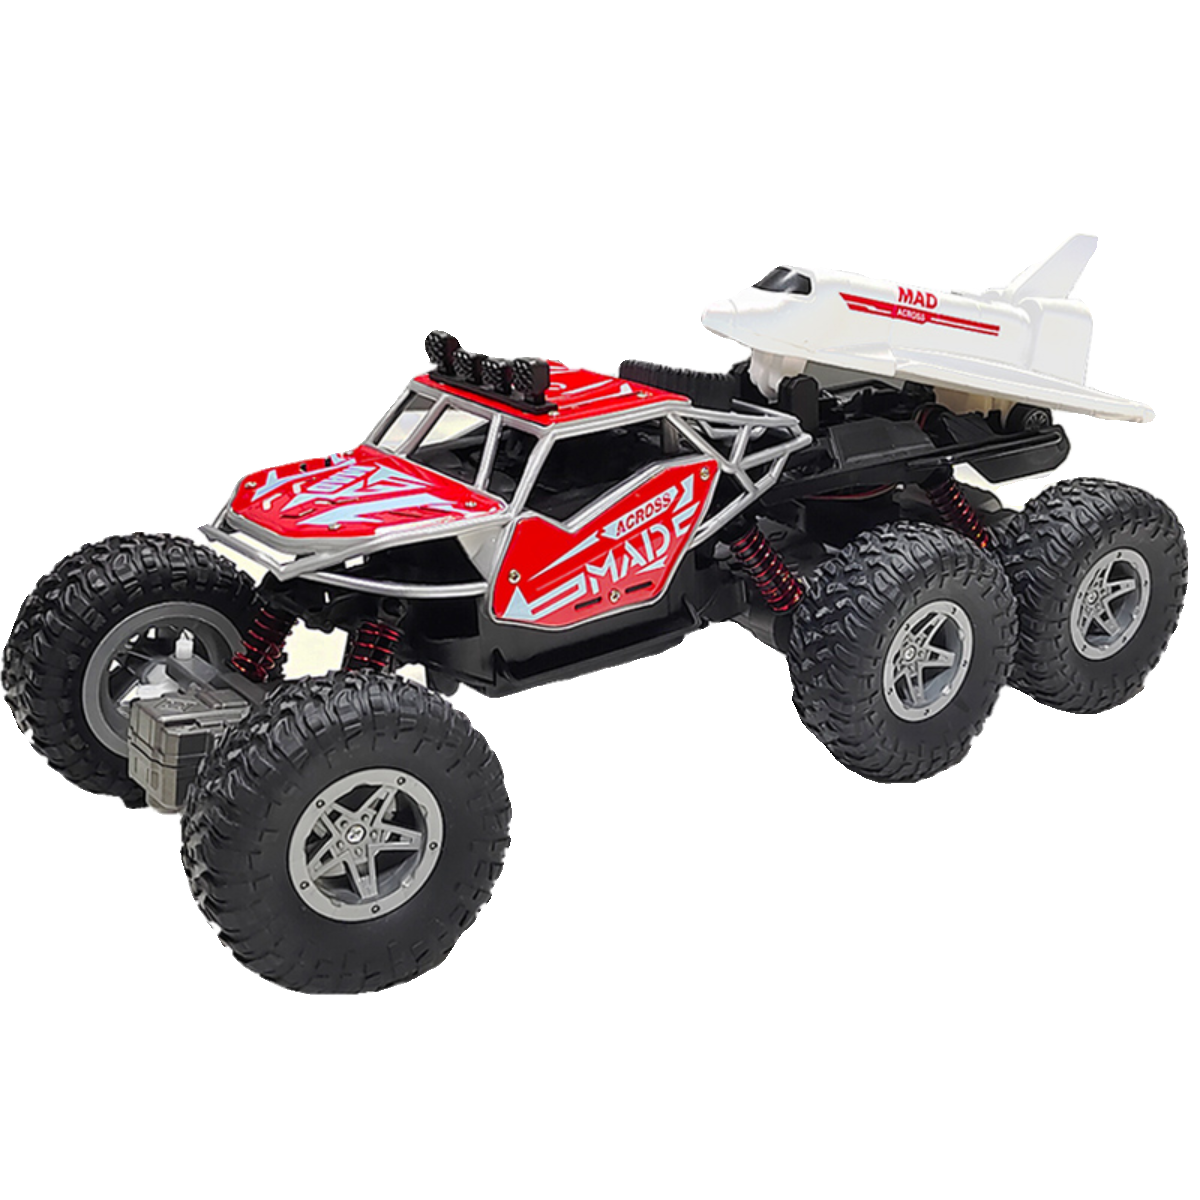 超大号合金遥控越野车高速攀爬车喷雾遥控汽车儿童男孩充电动玩具